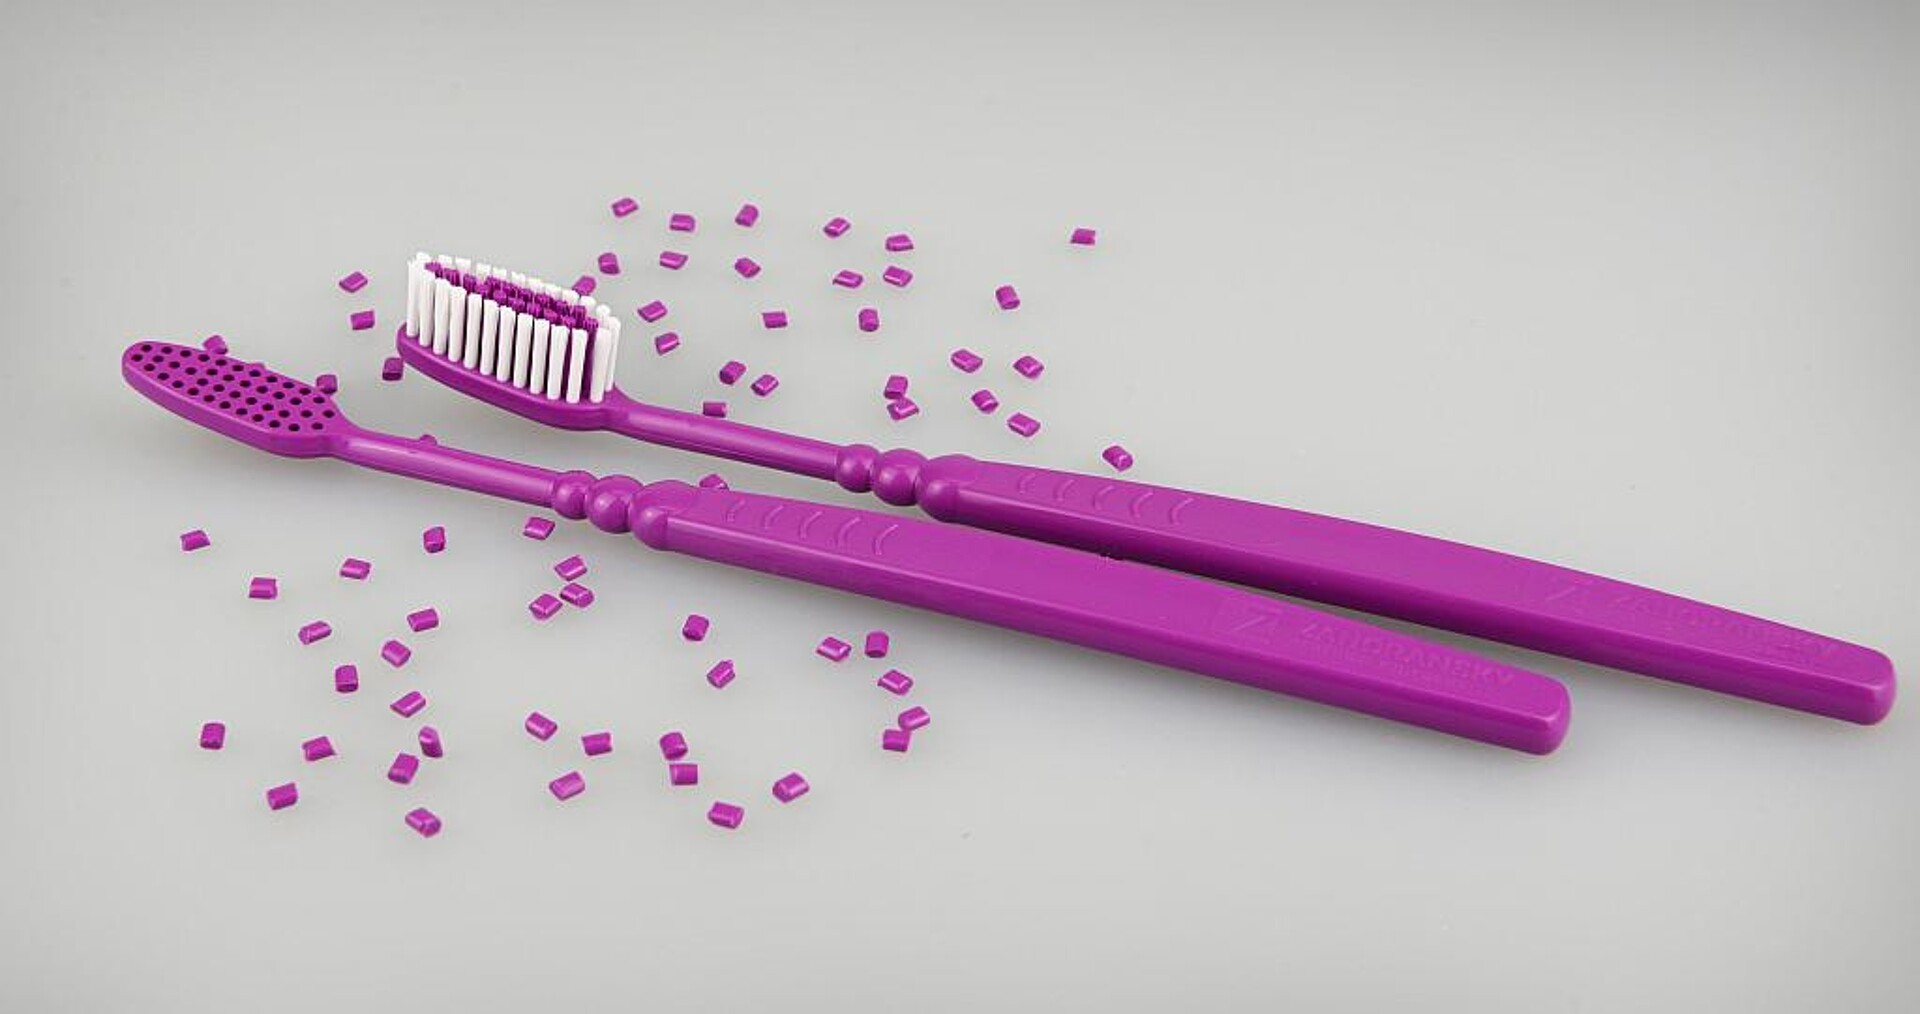 Alle Komponenten der Zahnbürste bestehen aus einem Material, wodurch sie einfach recycelbar ist. (Foto: Zahoransky)